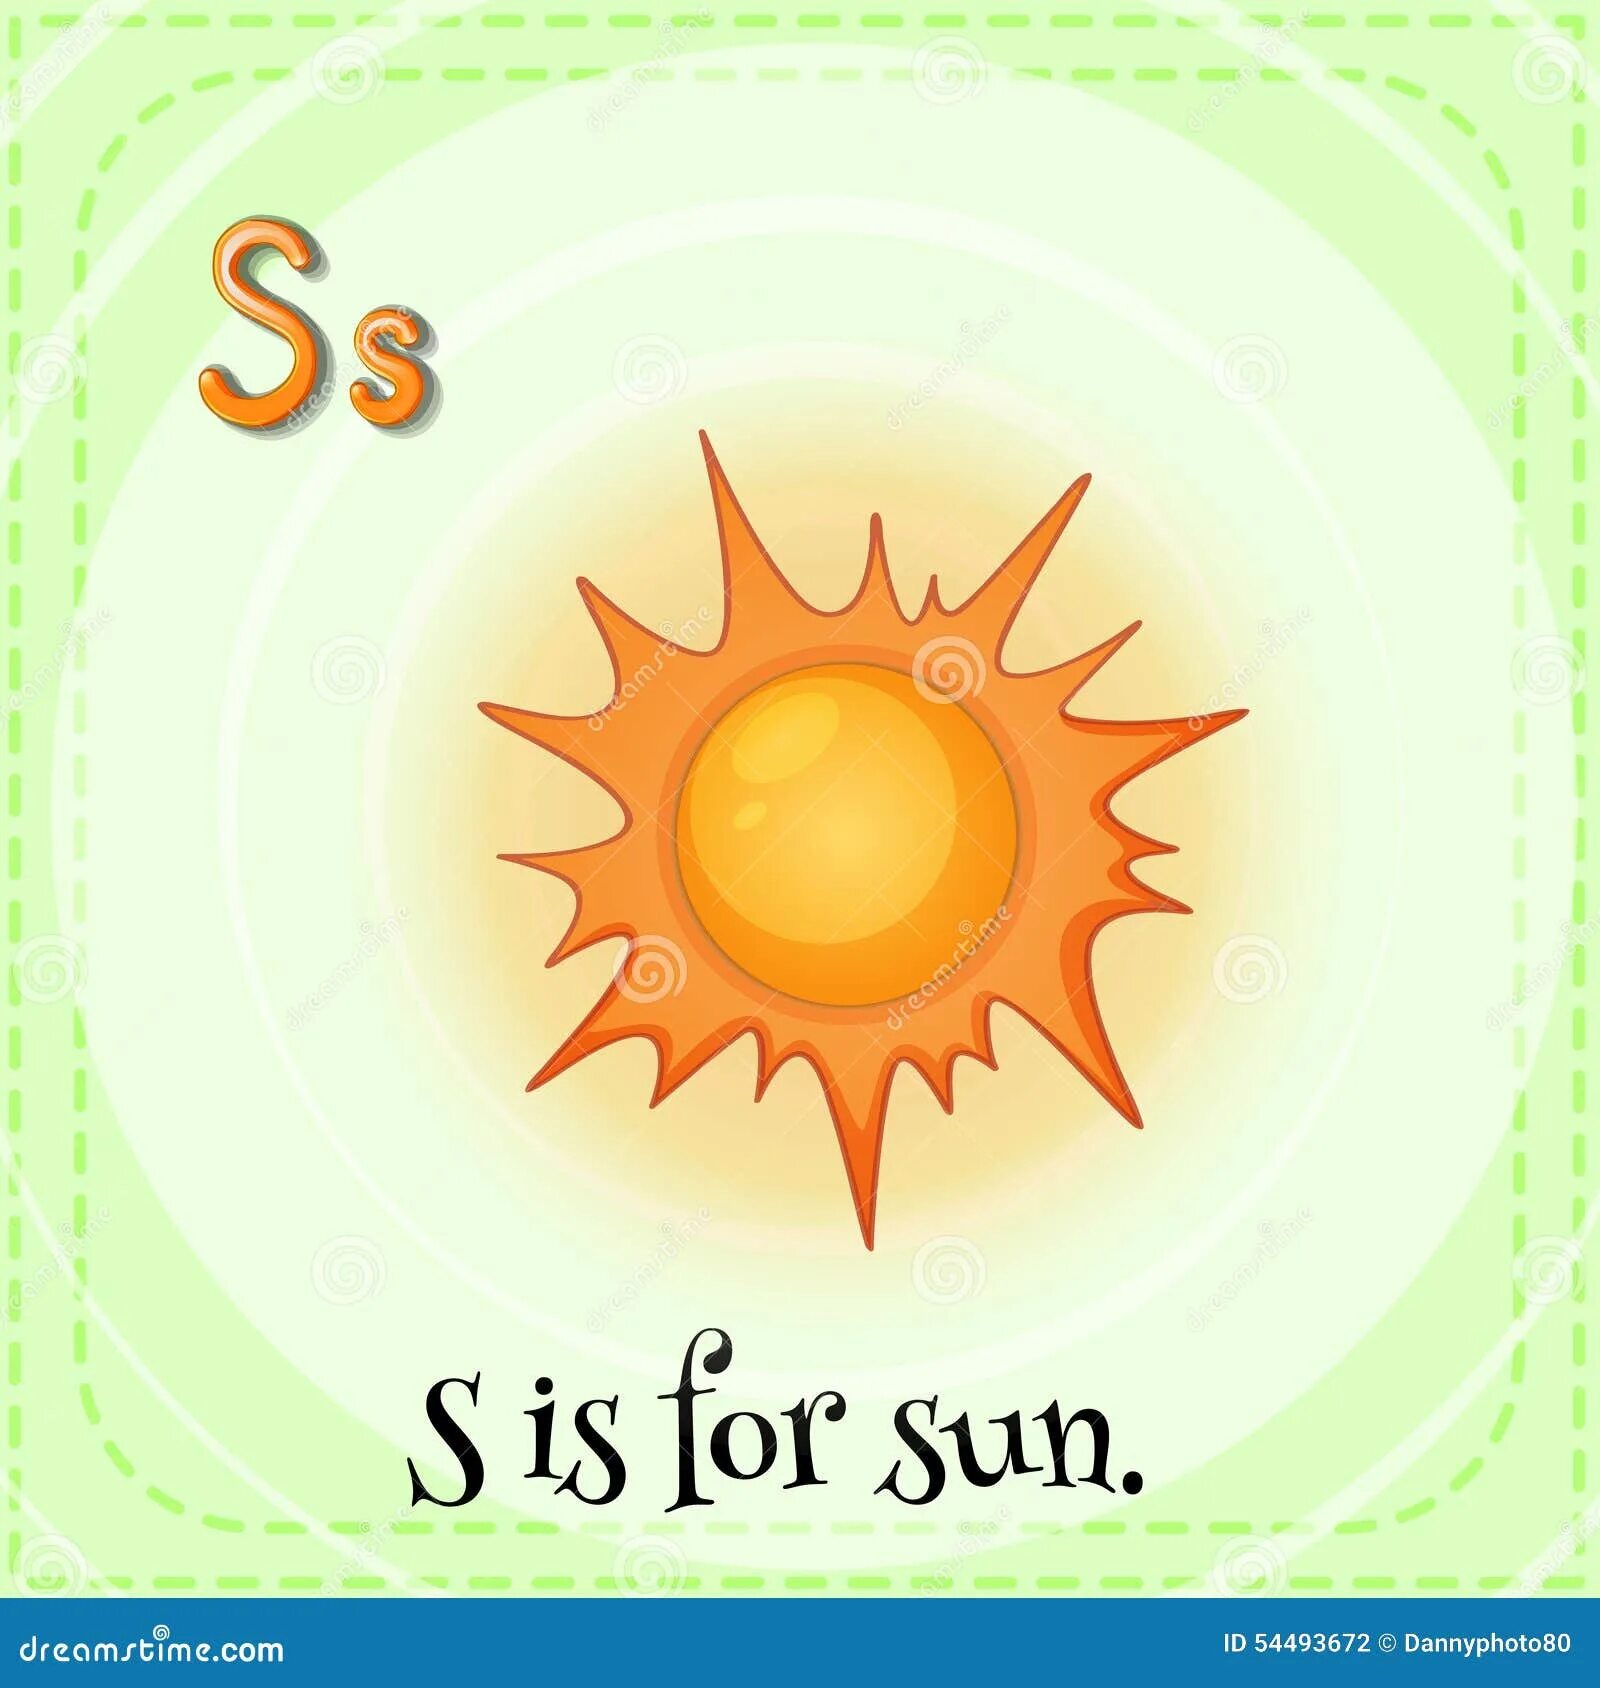 Как переводится солнечно. Солнце по английскому. Буква с солнце. Letter s is for Sun. Sun карточка.